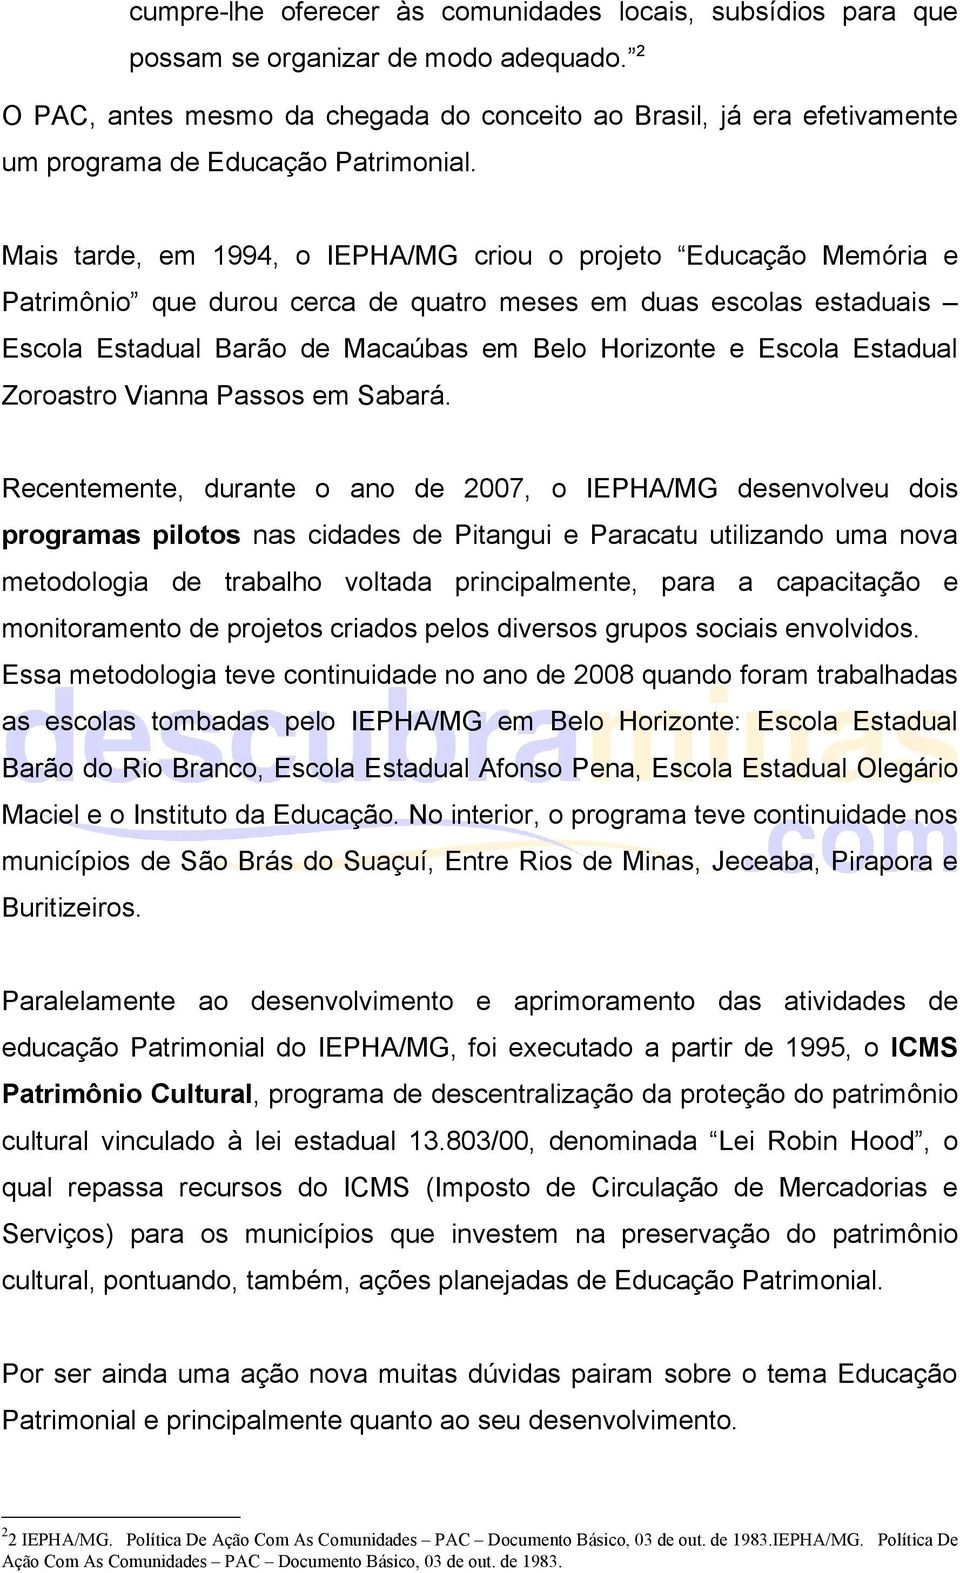 Mais tarde, em 1994, o IEPHA/MG criou o projeto Educação Memória e Patrimônio que durou cerca de quatro meses em duas escolas estaduais Escola Estadual Barão de Macaúbas em Belo Horizonte e Escola